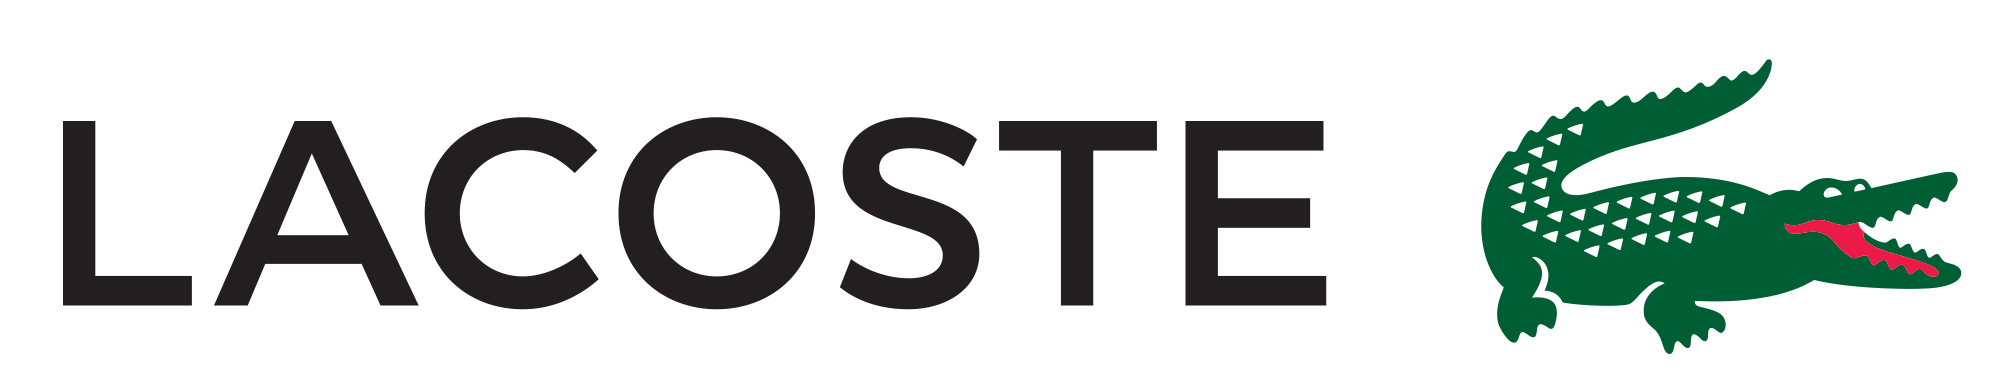 LACOSTE-logotipo